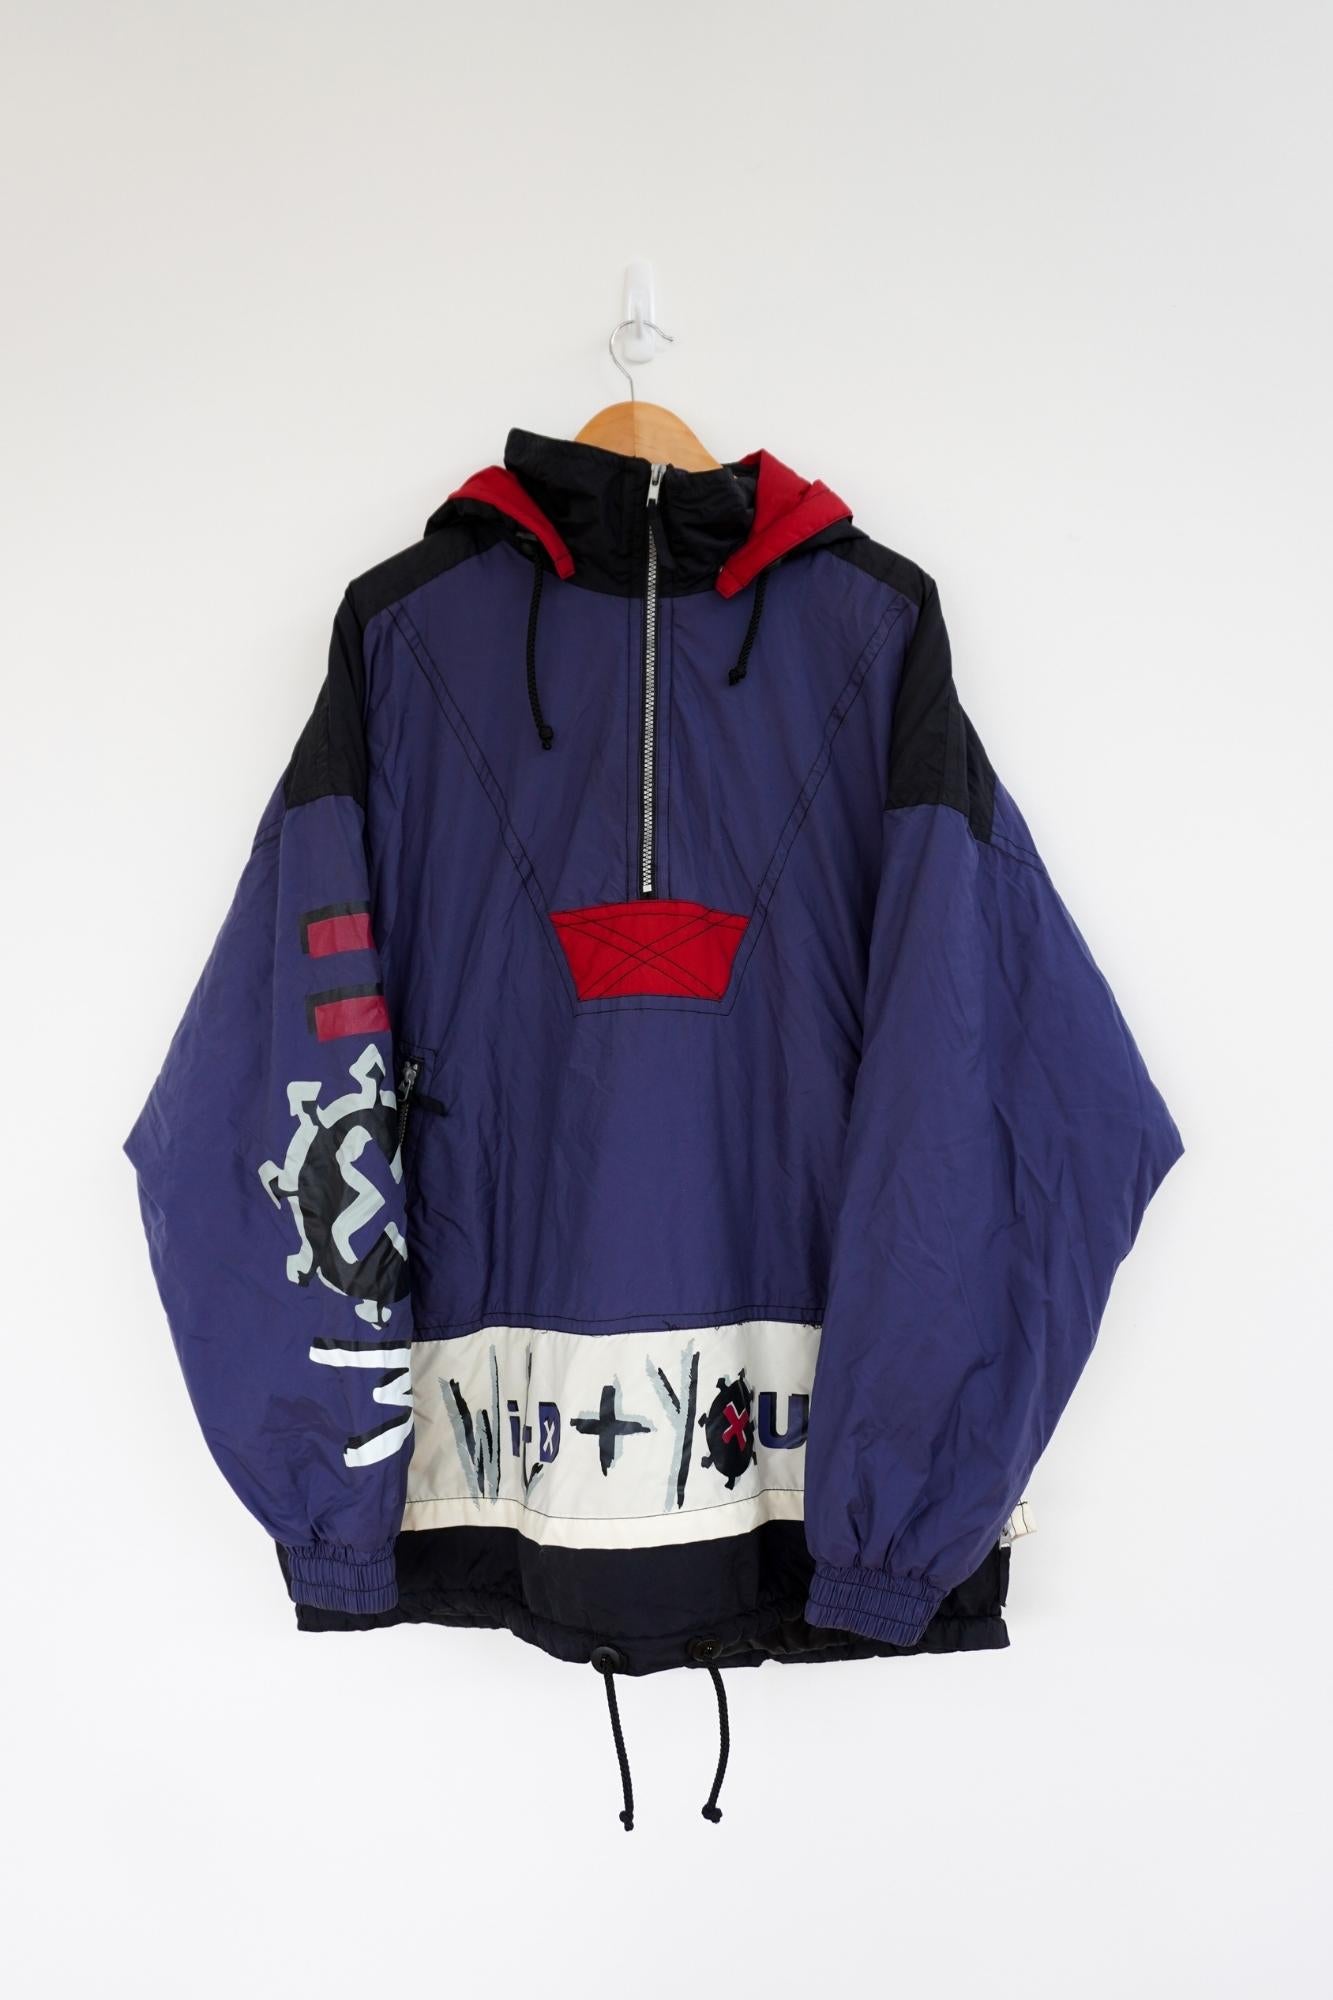 Wild Navy Vintage Ski Jacket